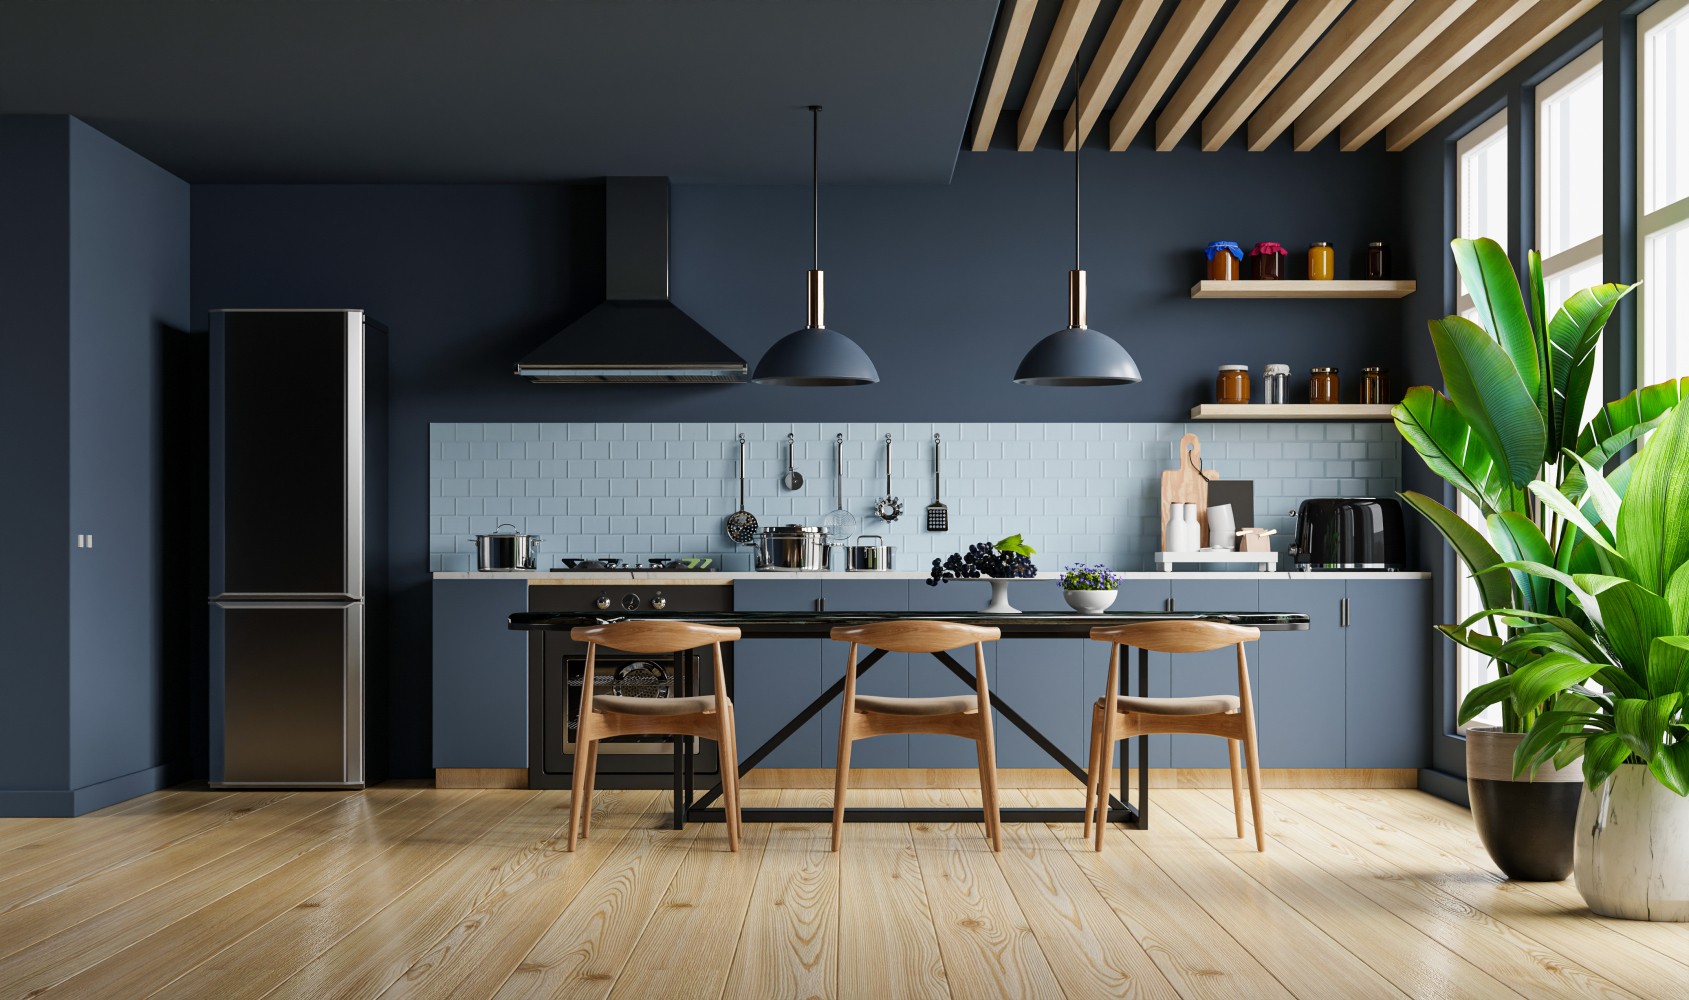 Cozinha moderna com ambiente cinzento escuro